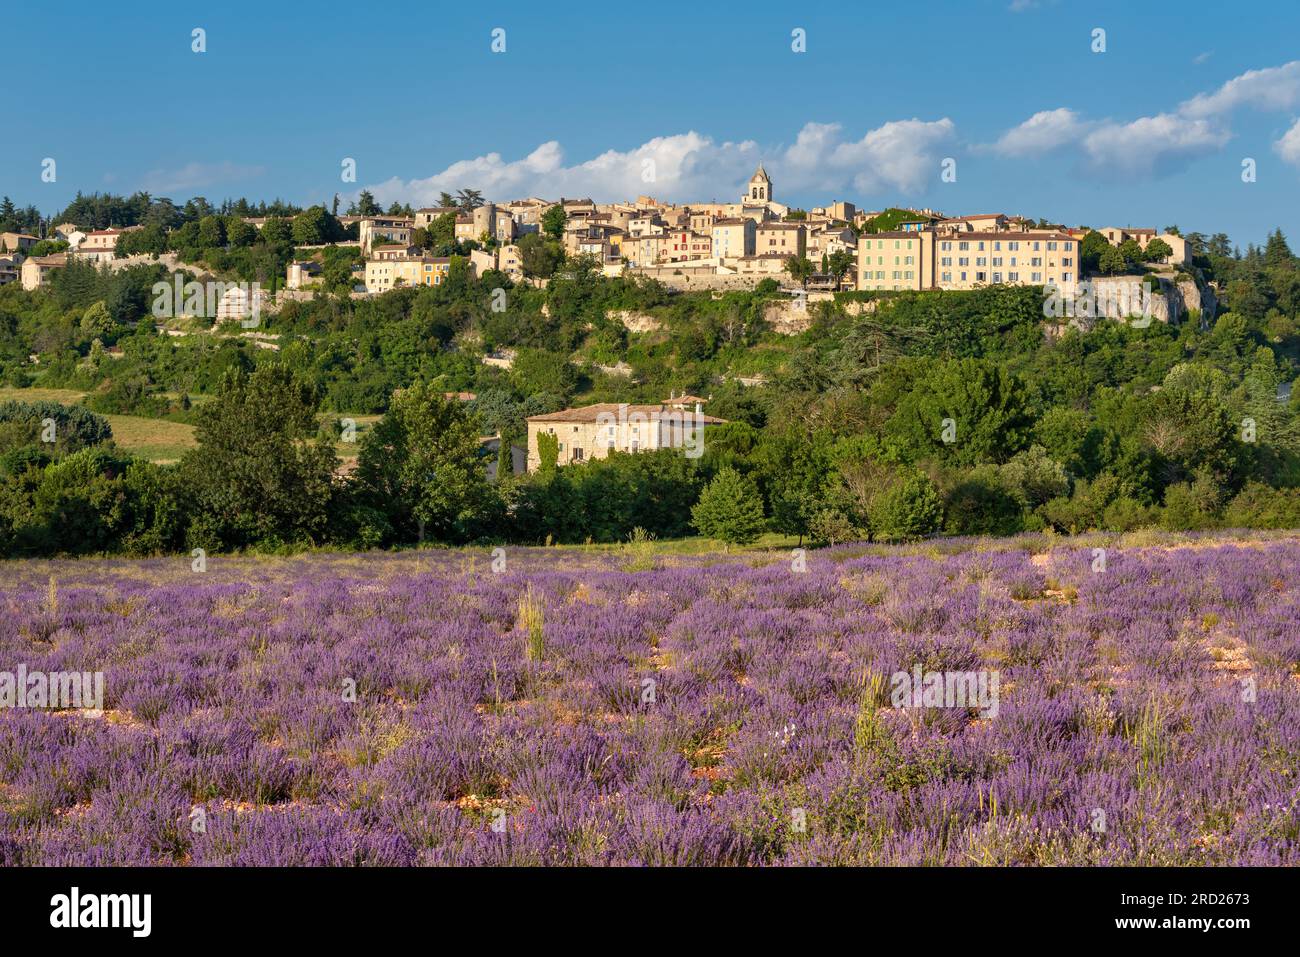 Das Provence-Dorf Sault liegt auf dem Plateau mit Lavendelfeldern. Sommer in Vaucluse, Frankreich Stockfoto